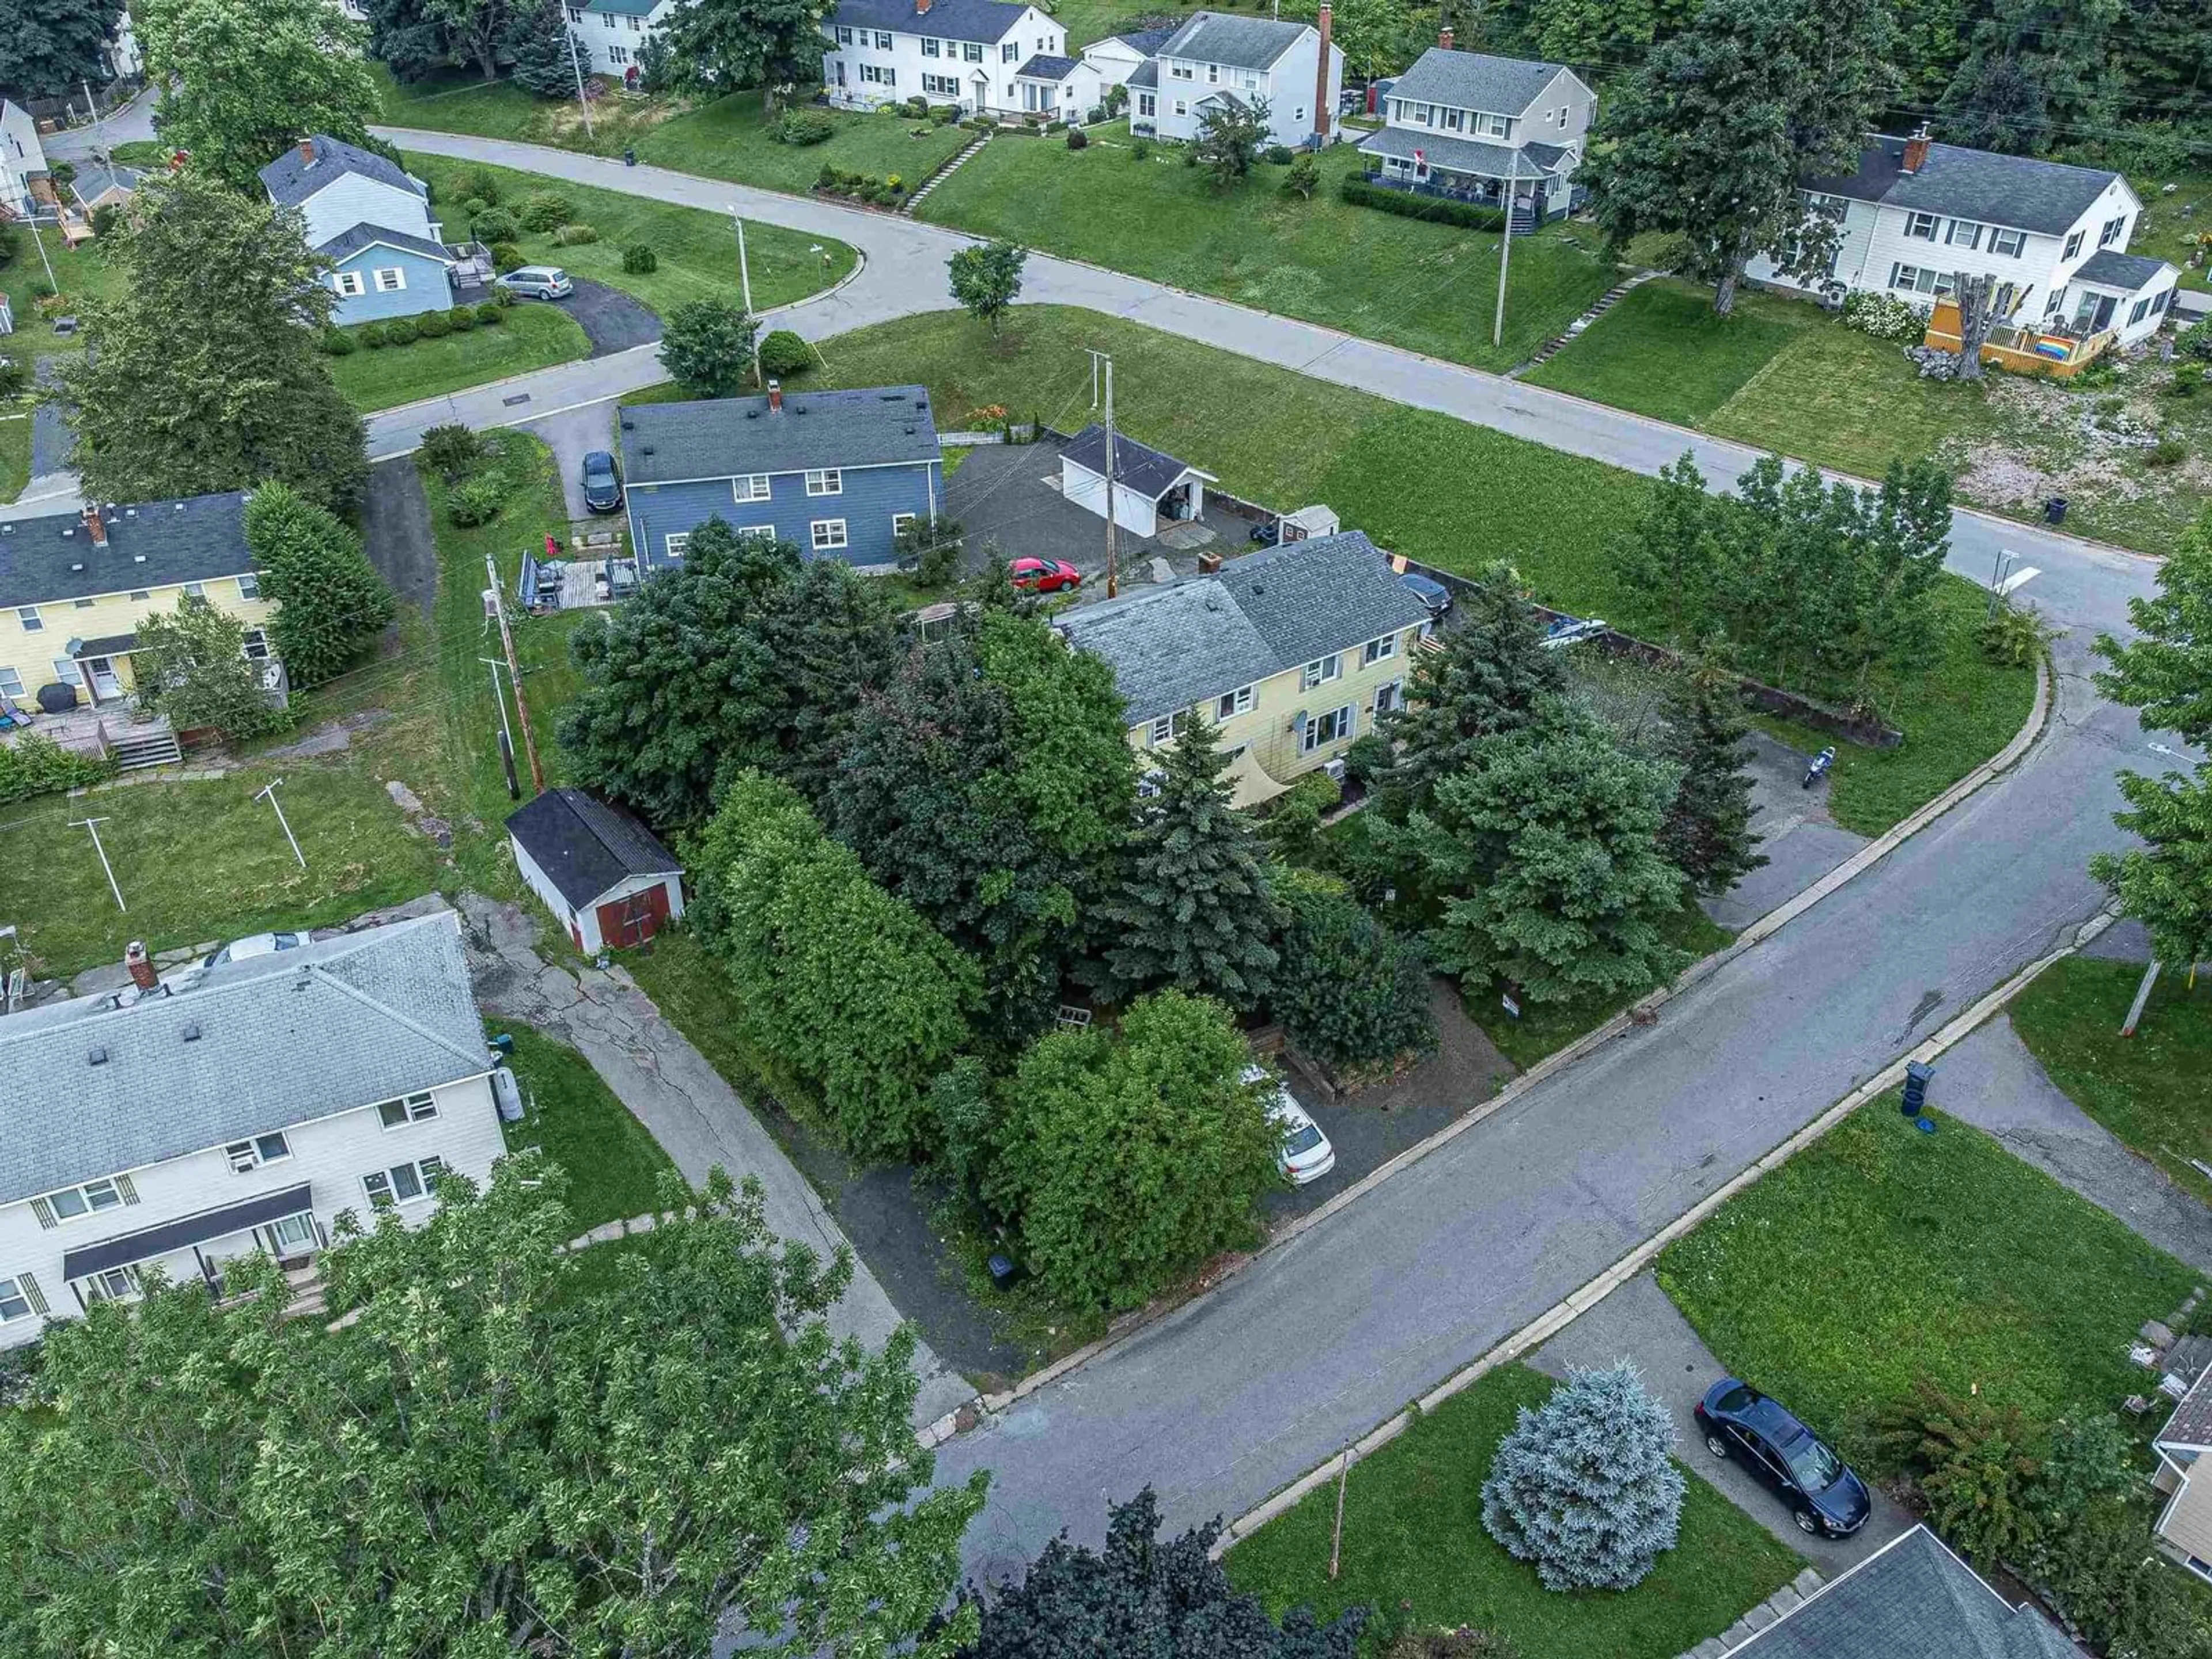 A view of a street for 130 Cote Des Neiges Rd, Cornwallis Park Nova Scotia B0S 1H0